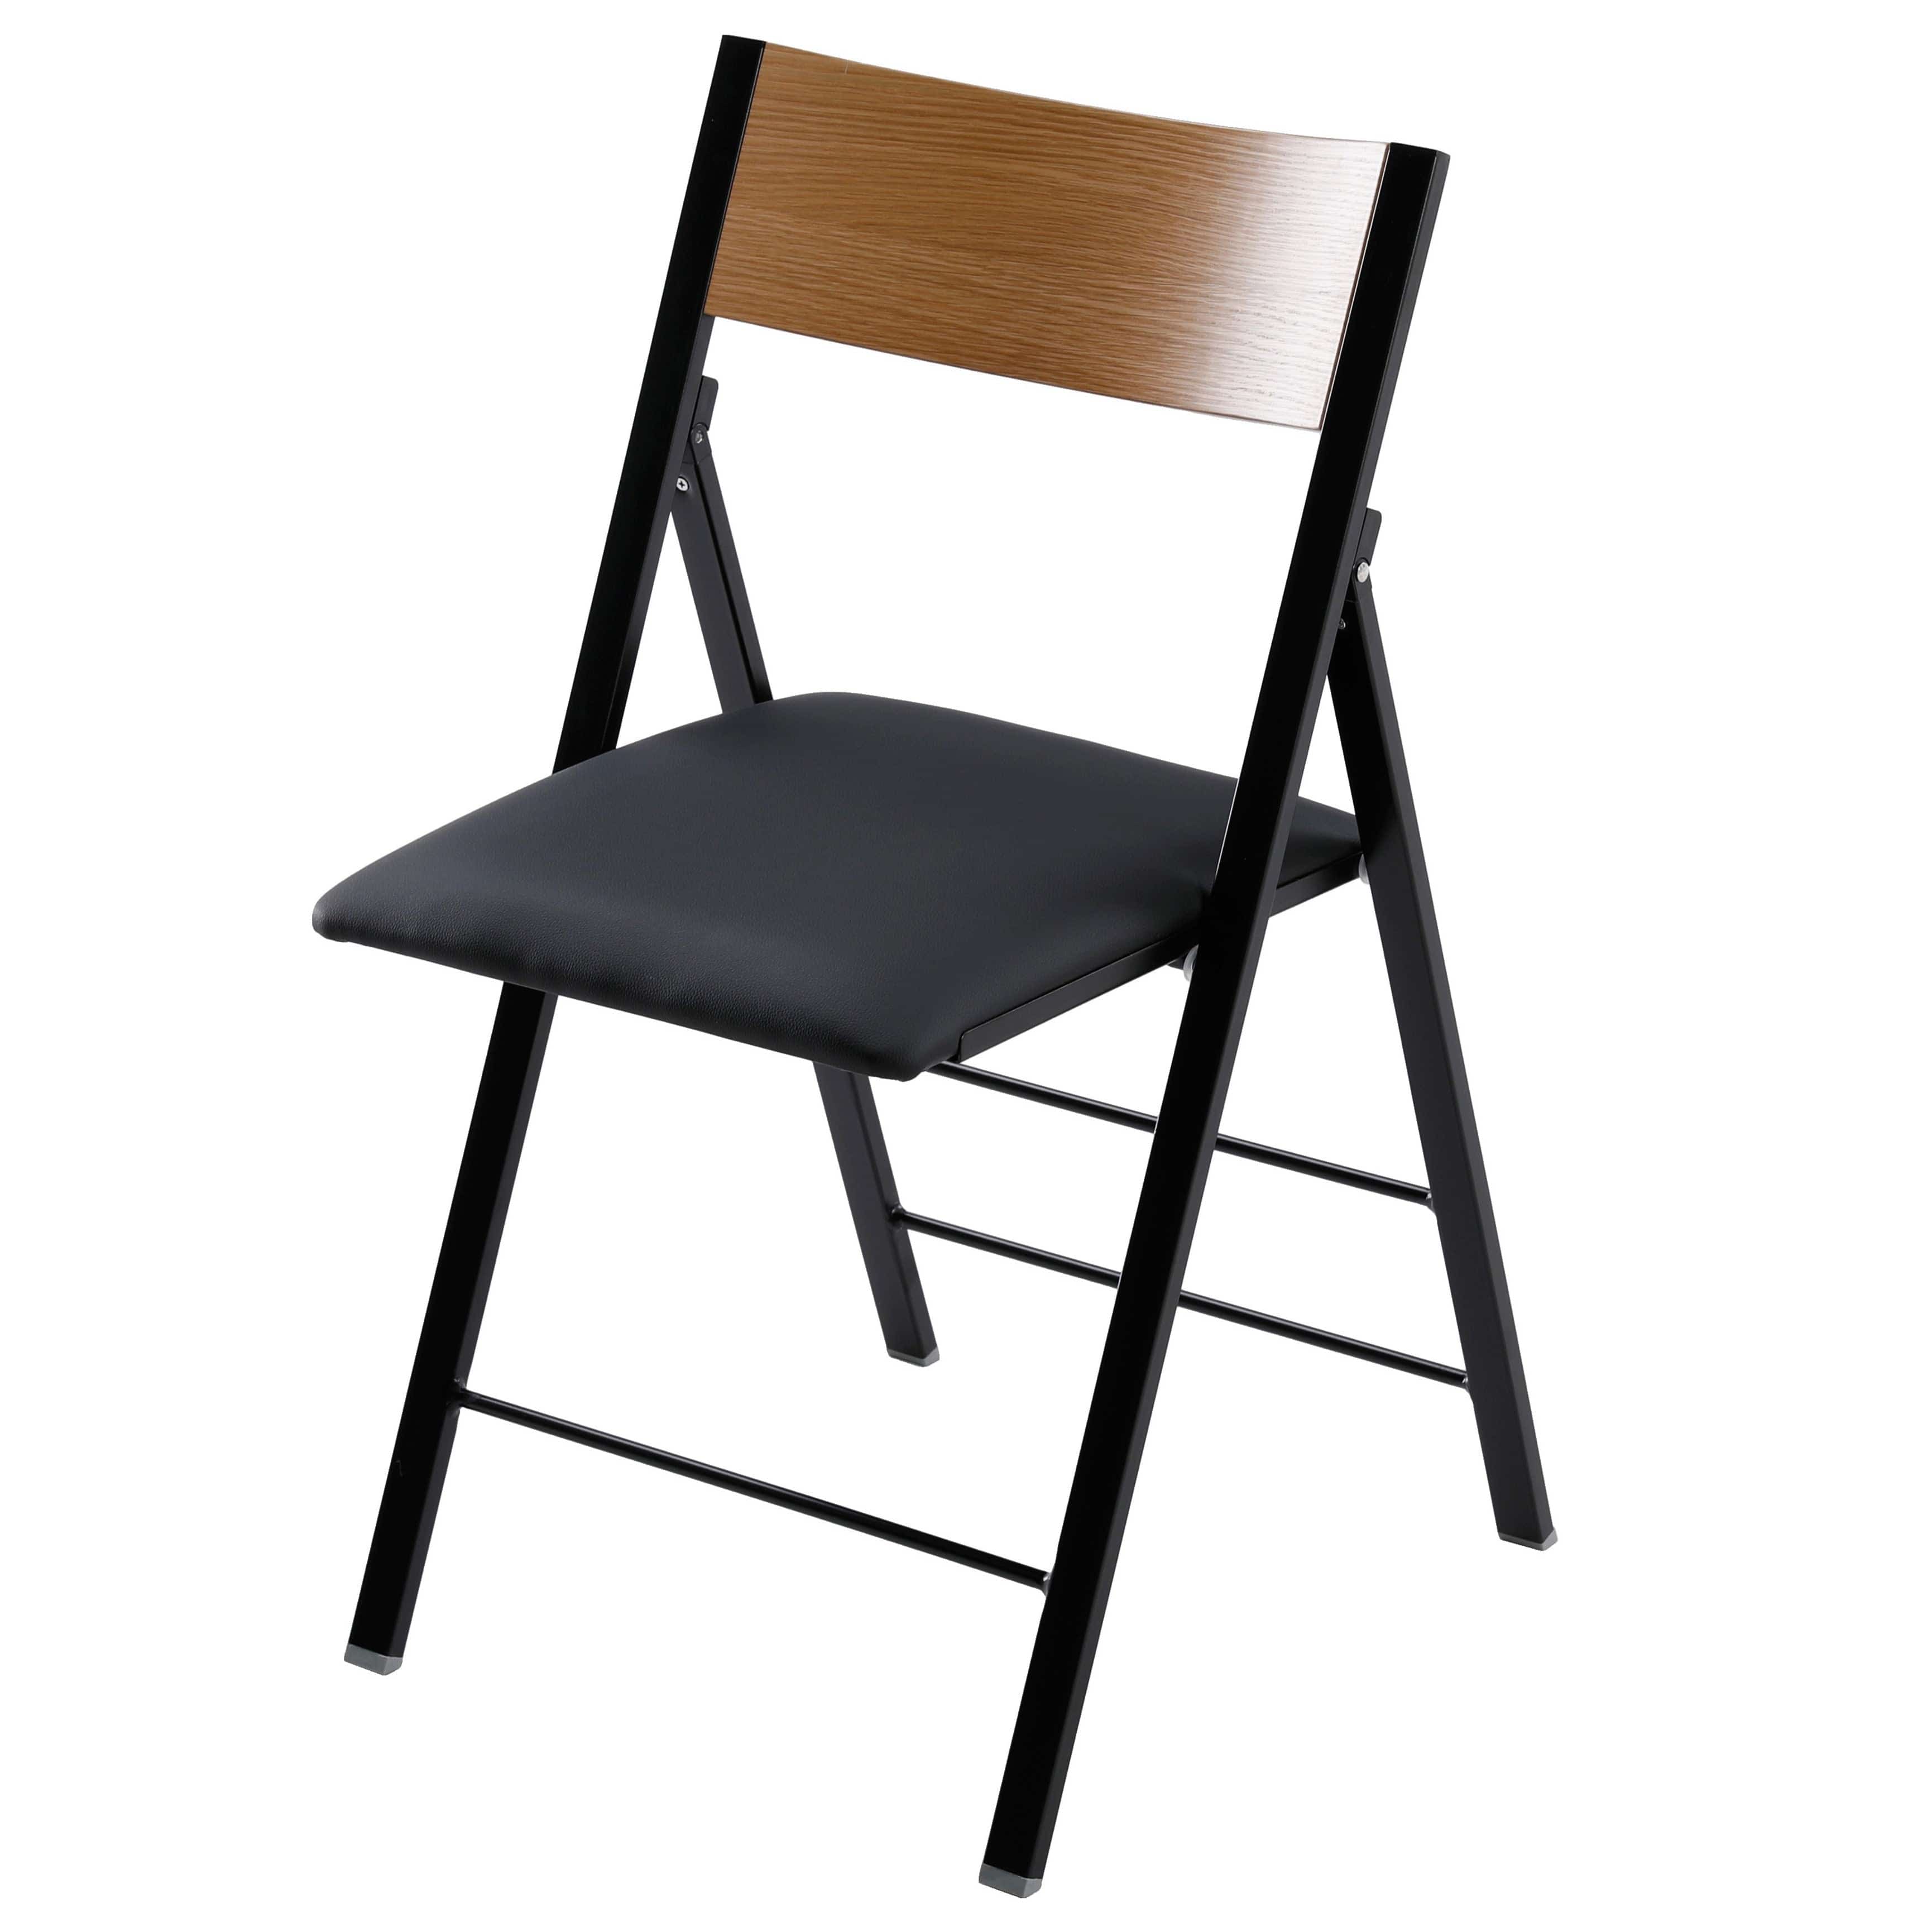 כסא מתקפל דגם שיקאגו מרופד בצבע שחור ועץ טיק